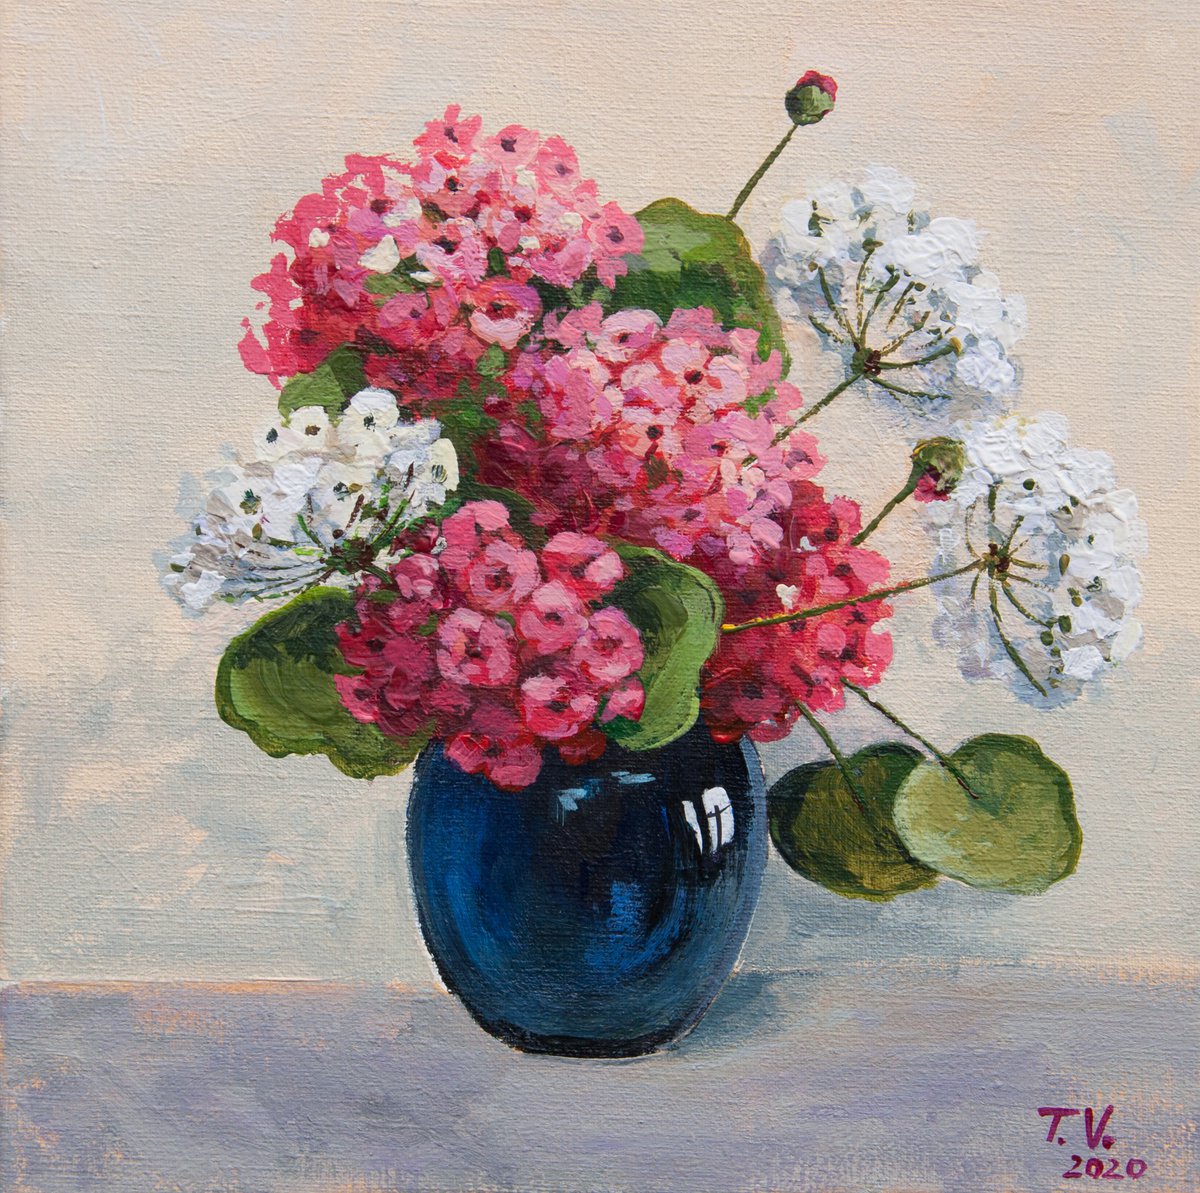 Geranium. Painting. Floral still life. 8 x 8in. by Tetiana Vysochynska